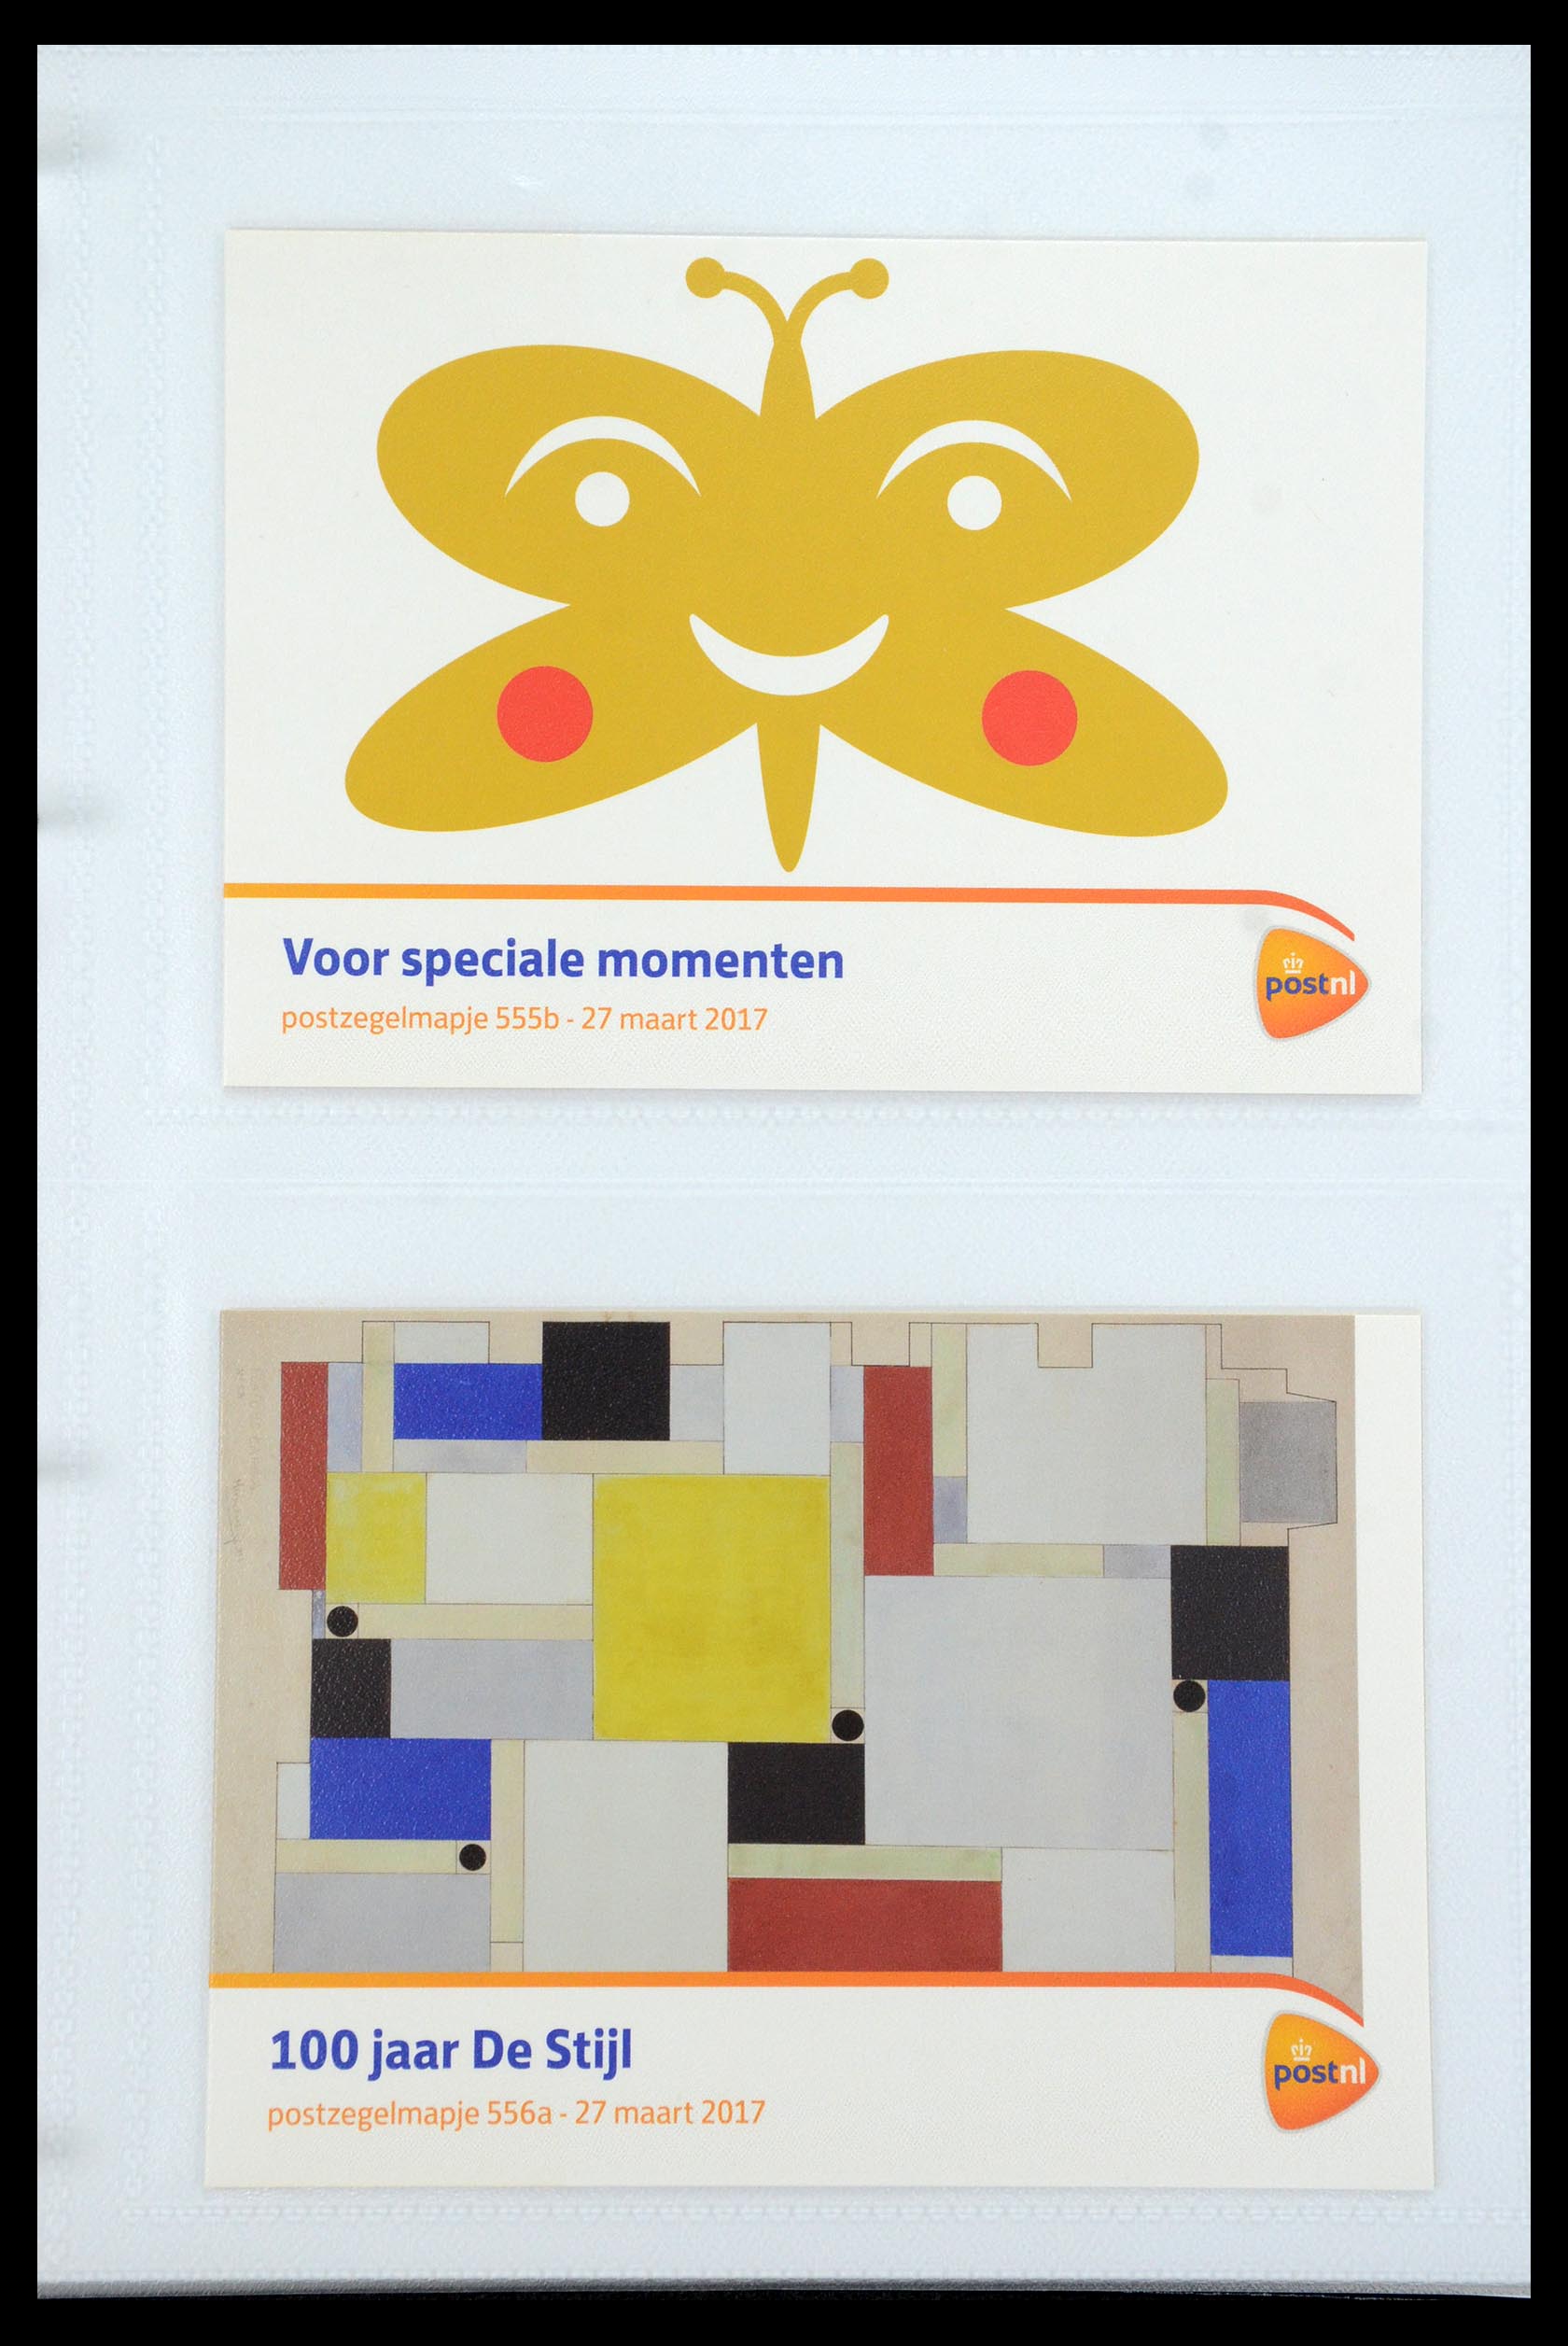 35947 332 - Stamp Collection 35947 Netherlands PTT presentation packs 1982-2019!